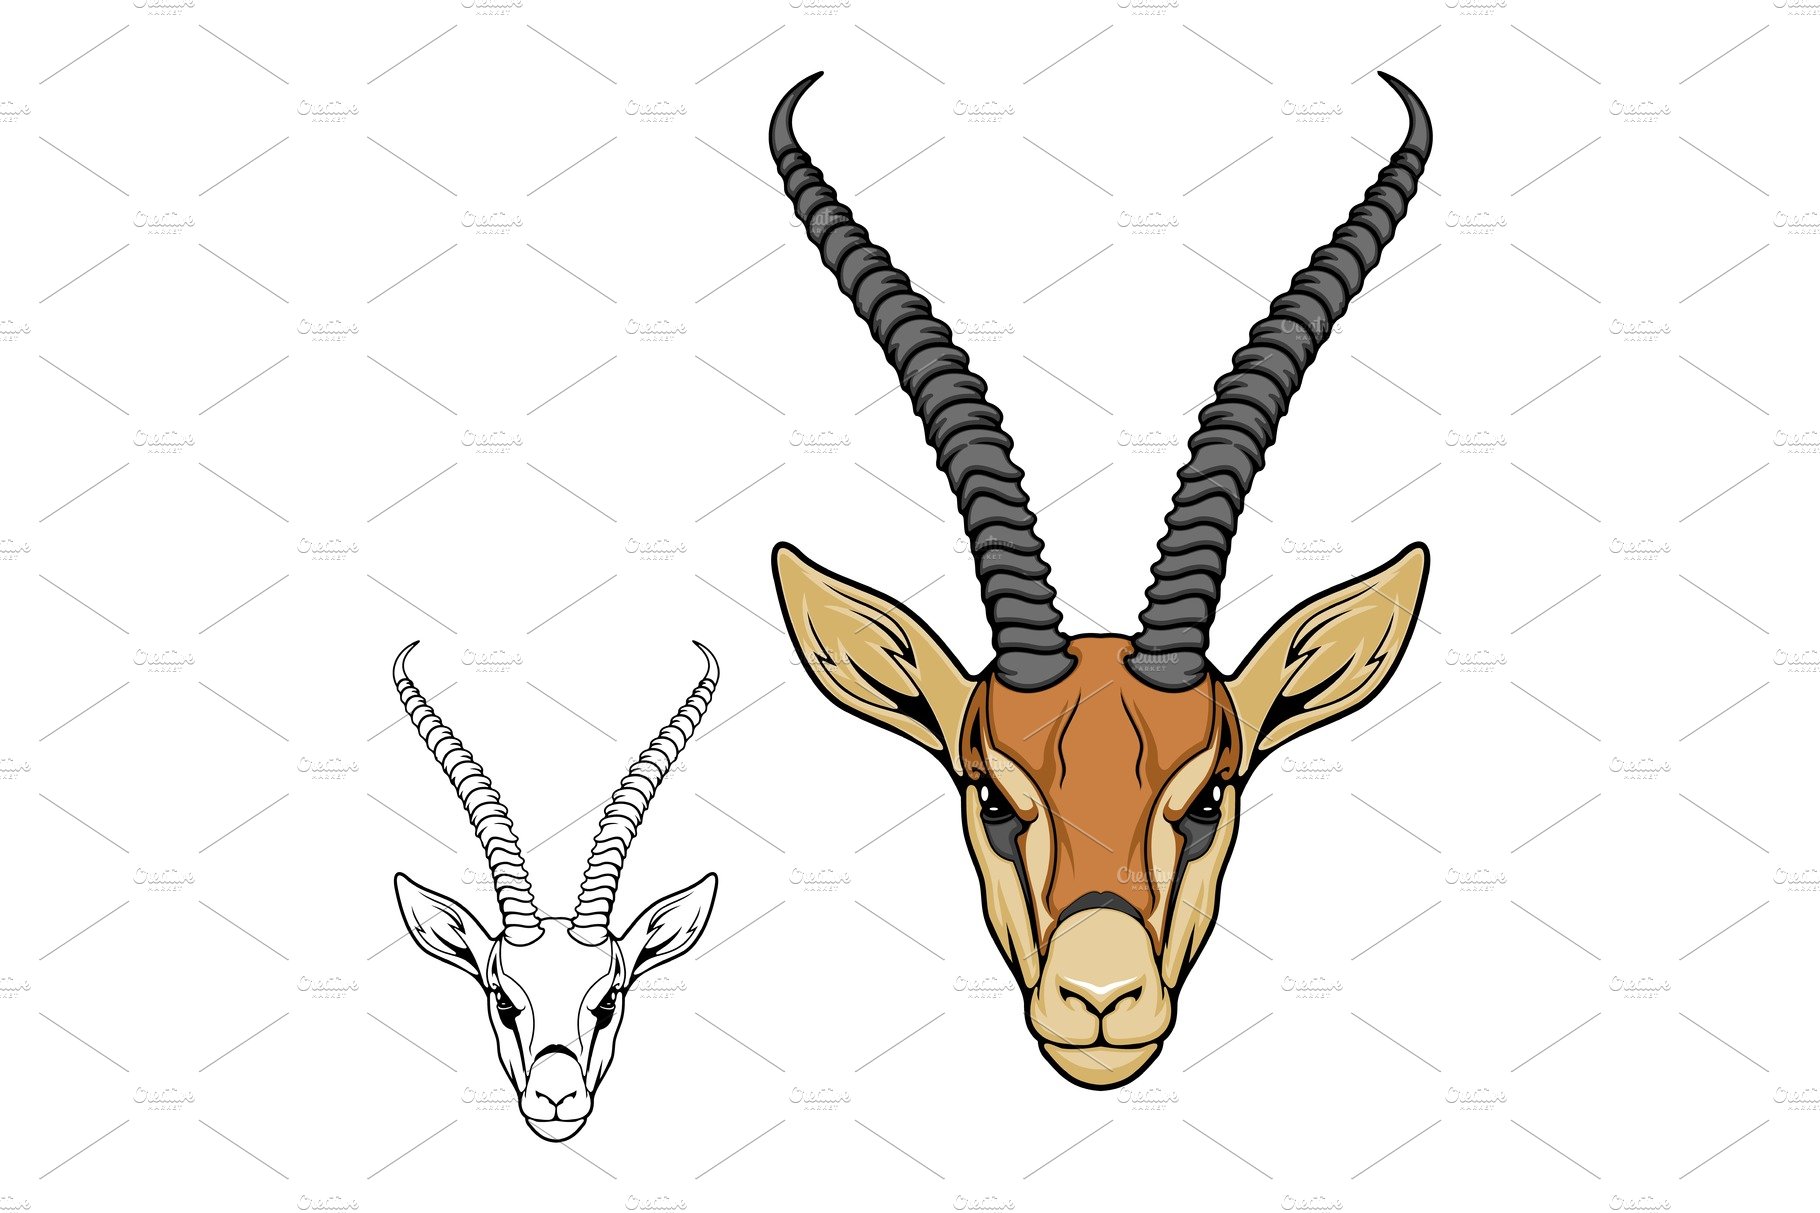 Impala antelope animal cover image.